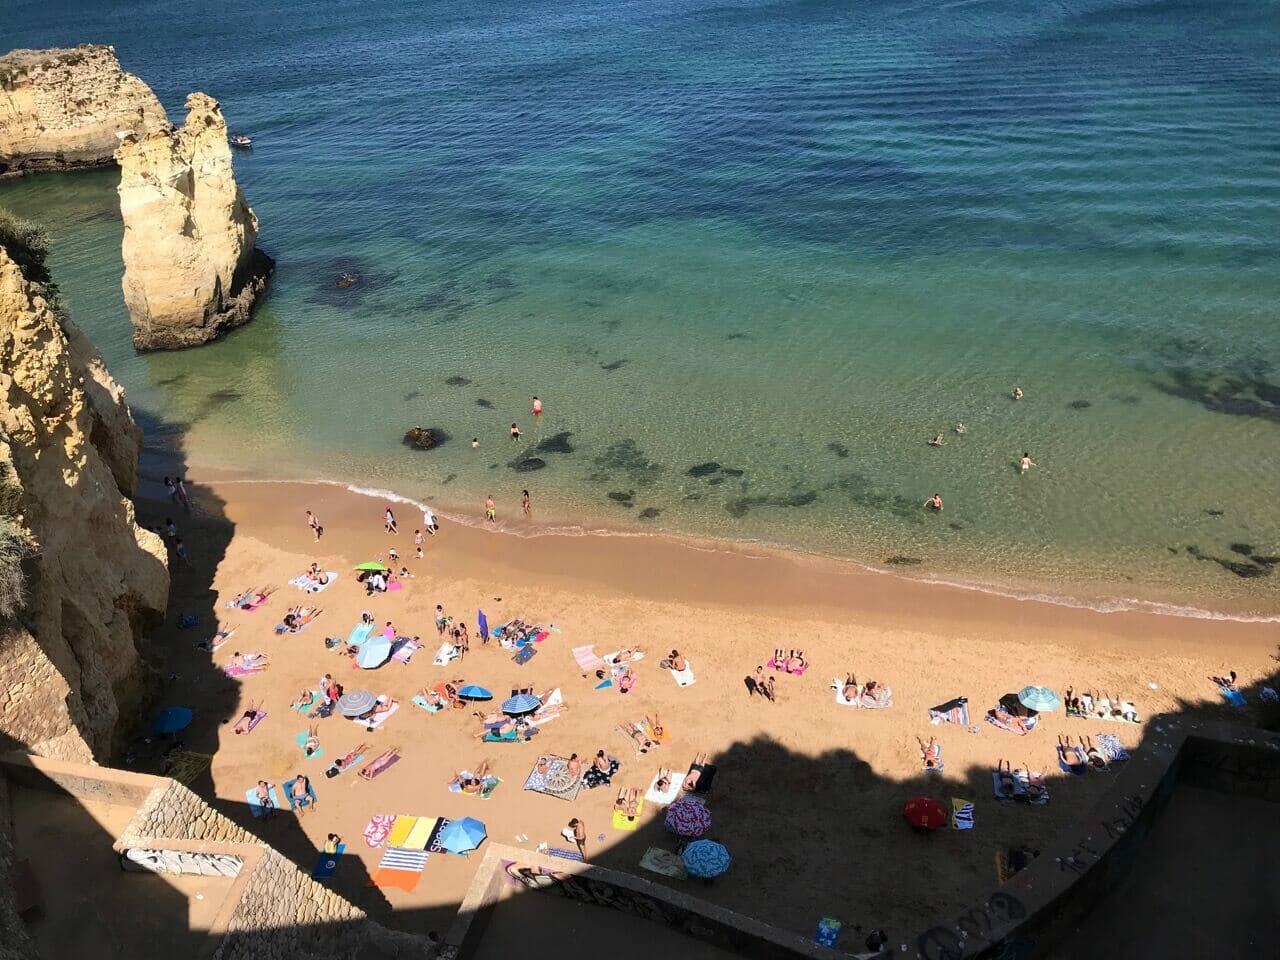 vista aérea da Praia do Pinhão com muita gente tomando sol, outros nadando nas águas cristalinas verde-azuladas e algumas falésias amarelas